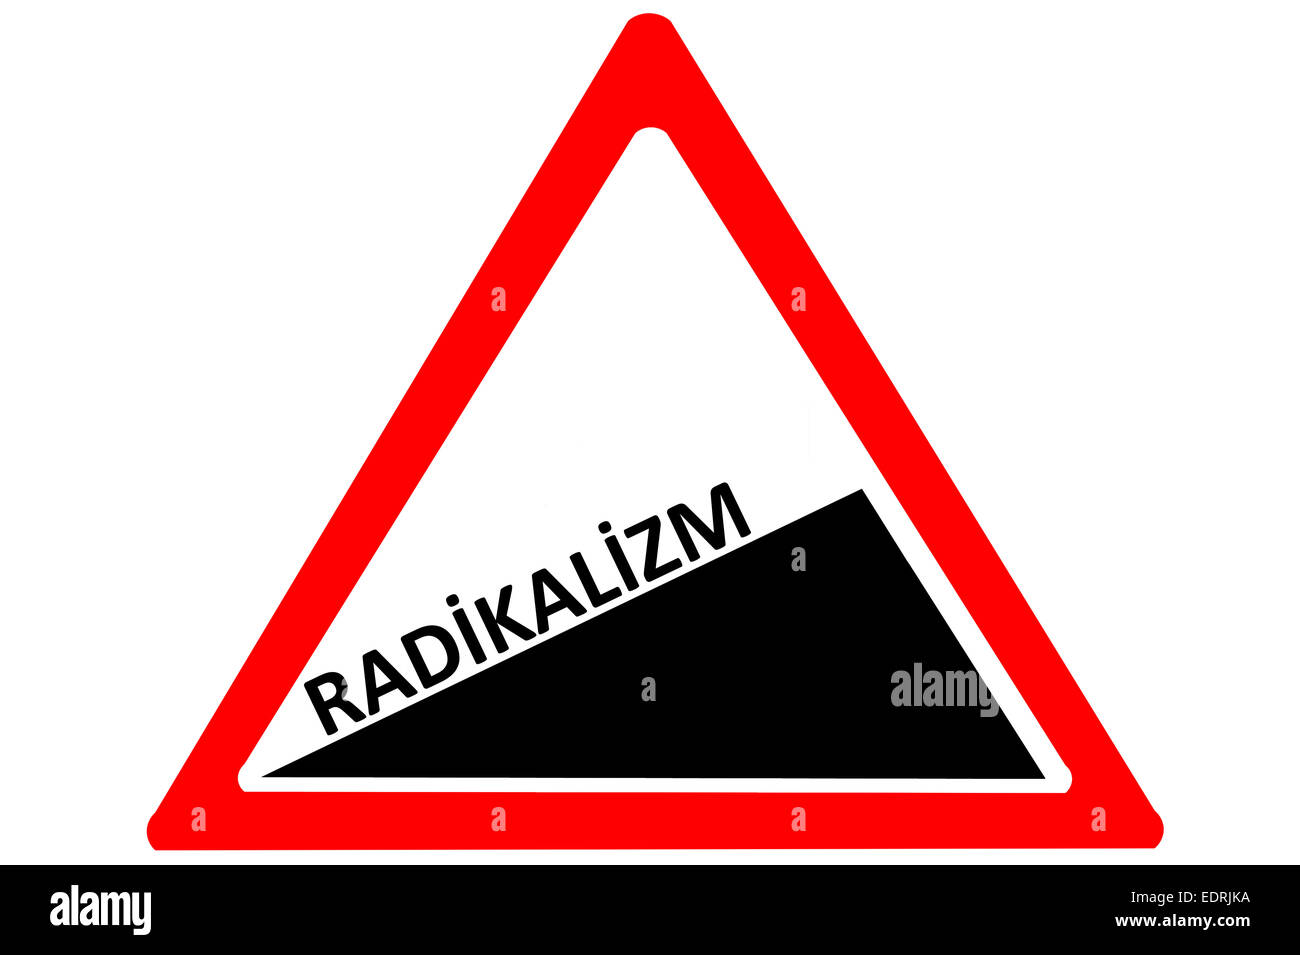 Il radicalismo radikalizm turco crescente attenzione cartello stradale isolato su sfondo bianco Foto Stock